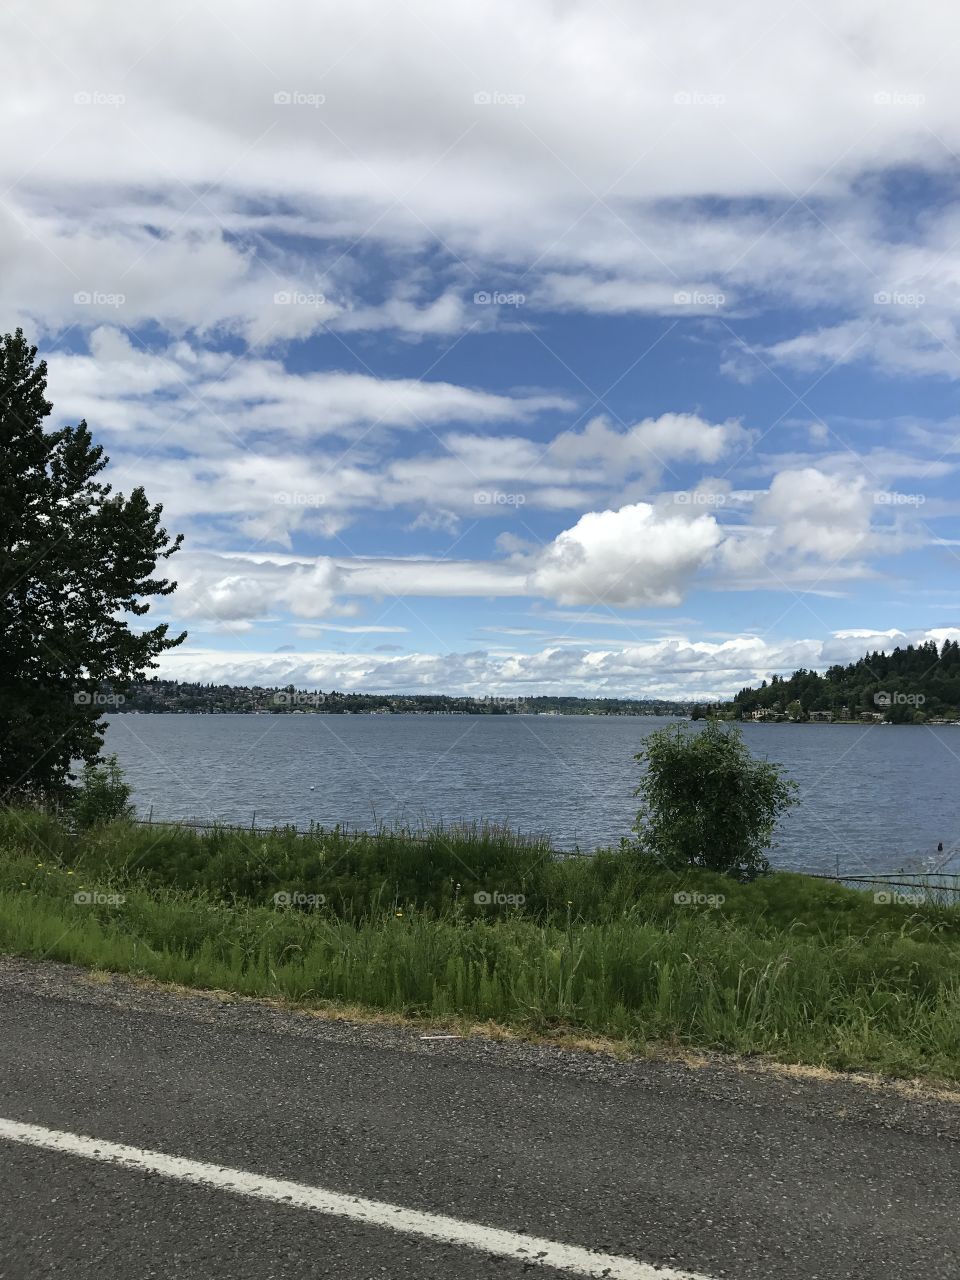 View of the sky and Lake Washington
